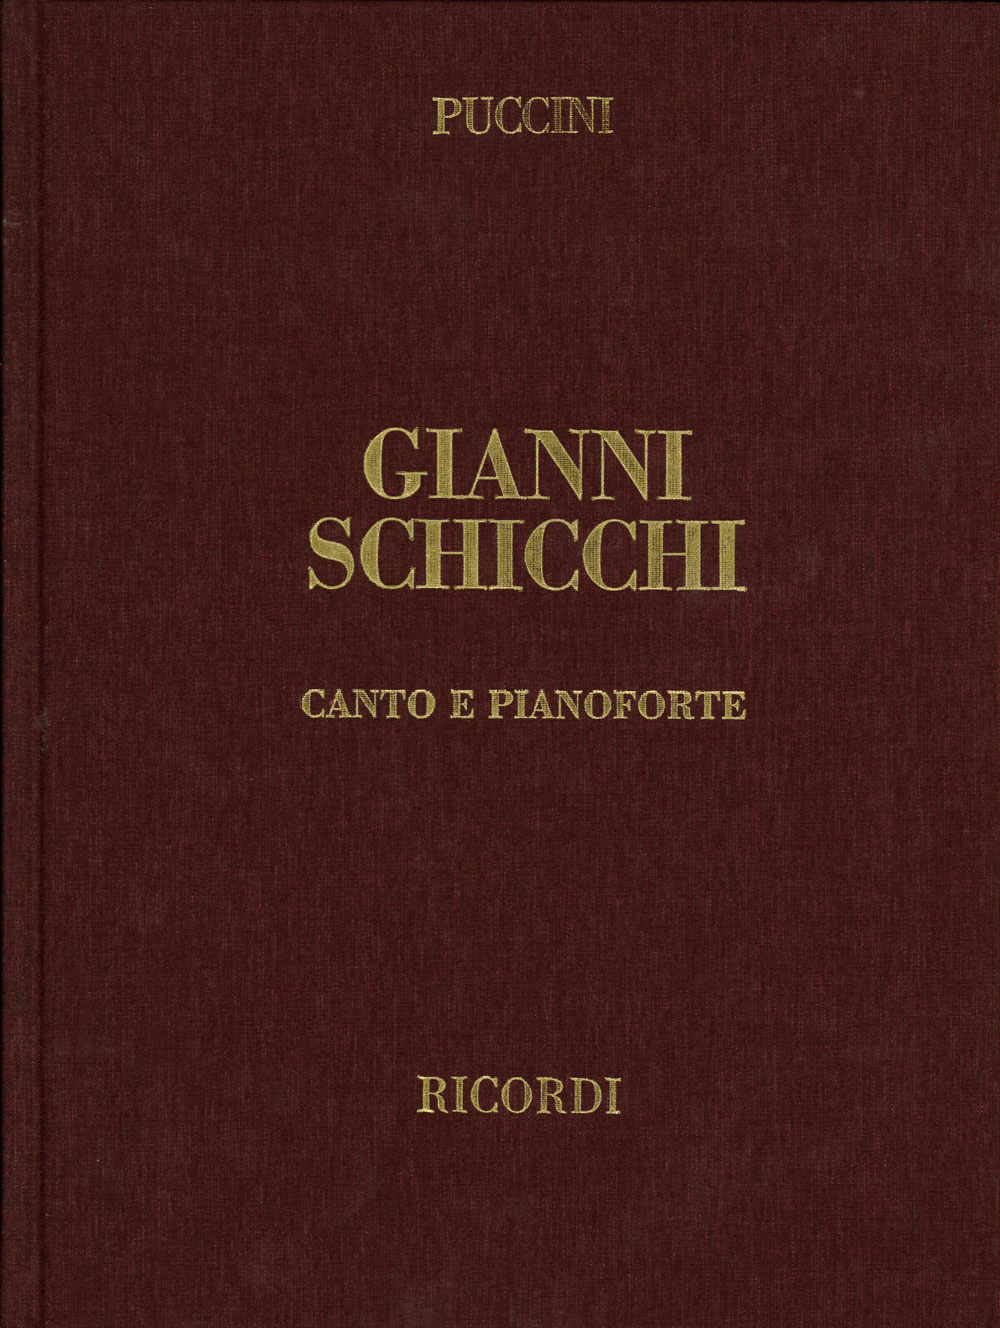 RICORDI PUCCINI G. - GIANNI SCHICCHI - CHANT ET PIANO